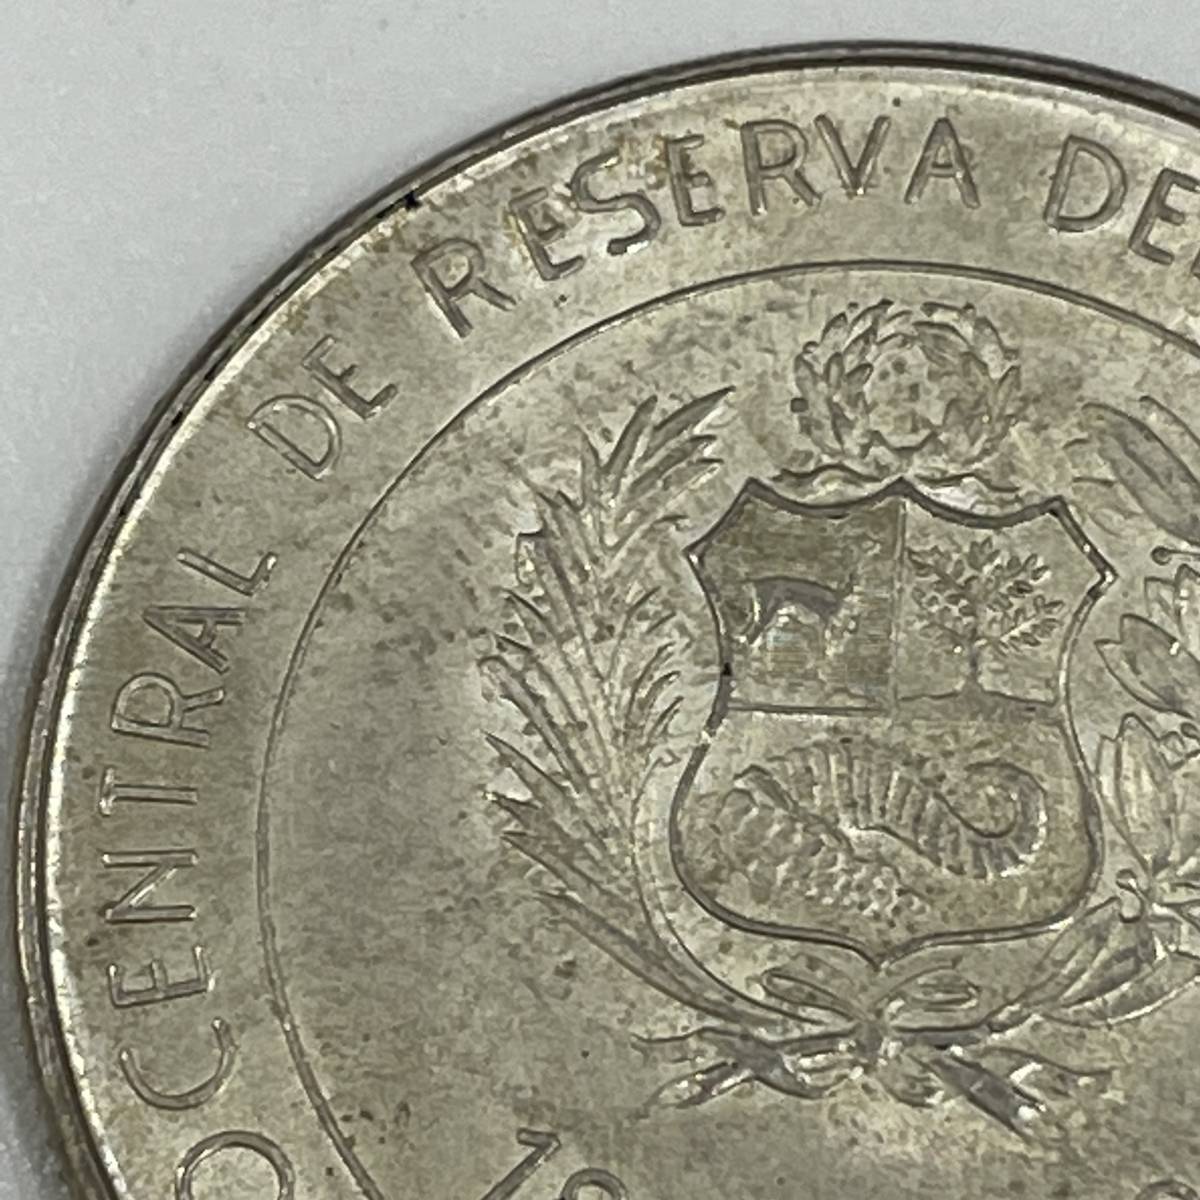 #5163 ペルー修好100周年記念 100ソル 銀貨 100 soles de oro 1873年-1973年 古銭 外国銭 コイン コレクション 現状品の画像7